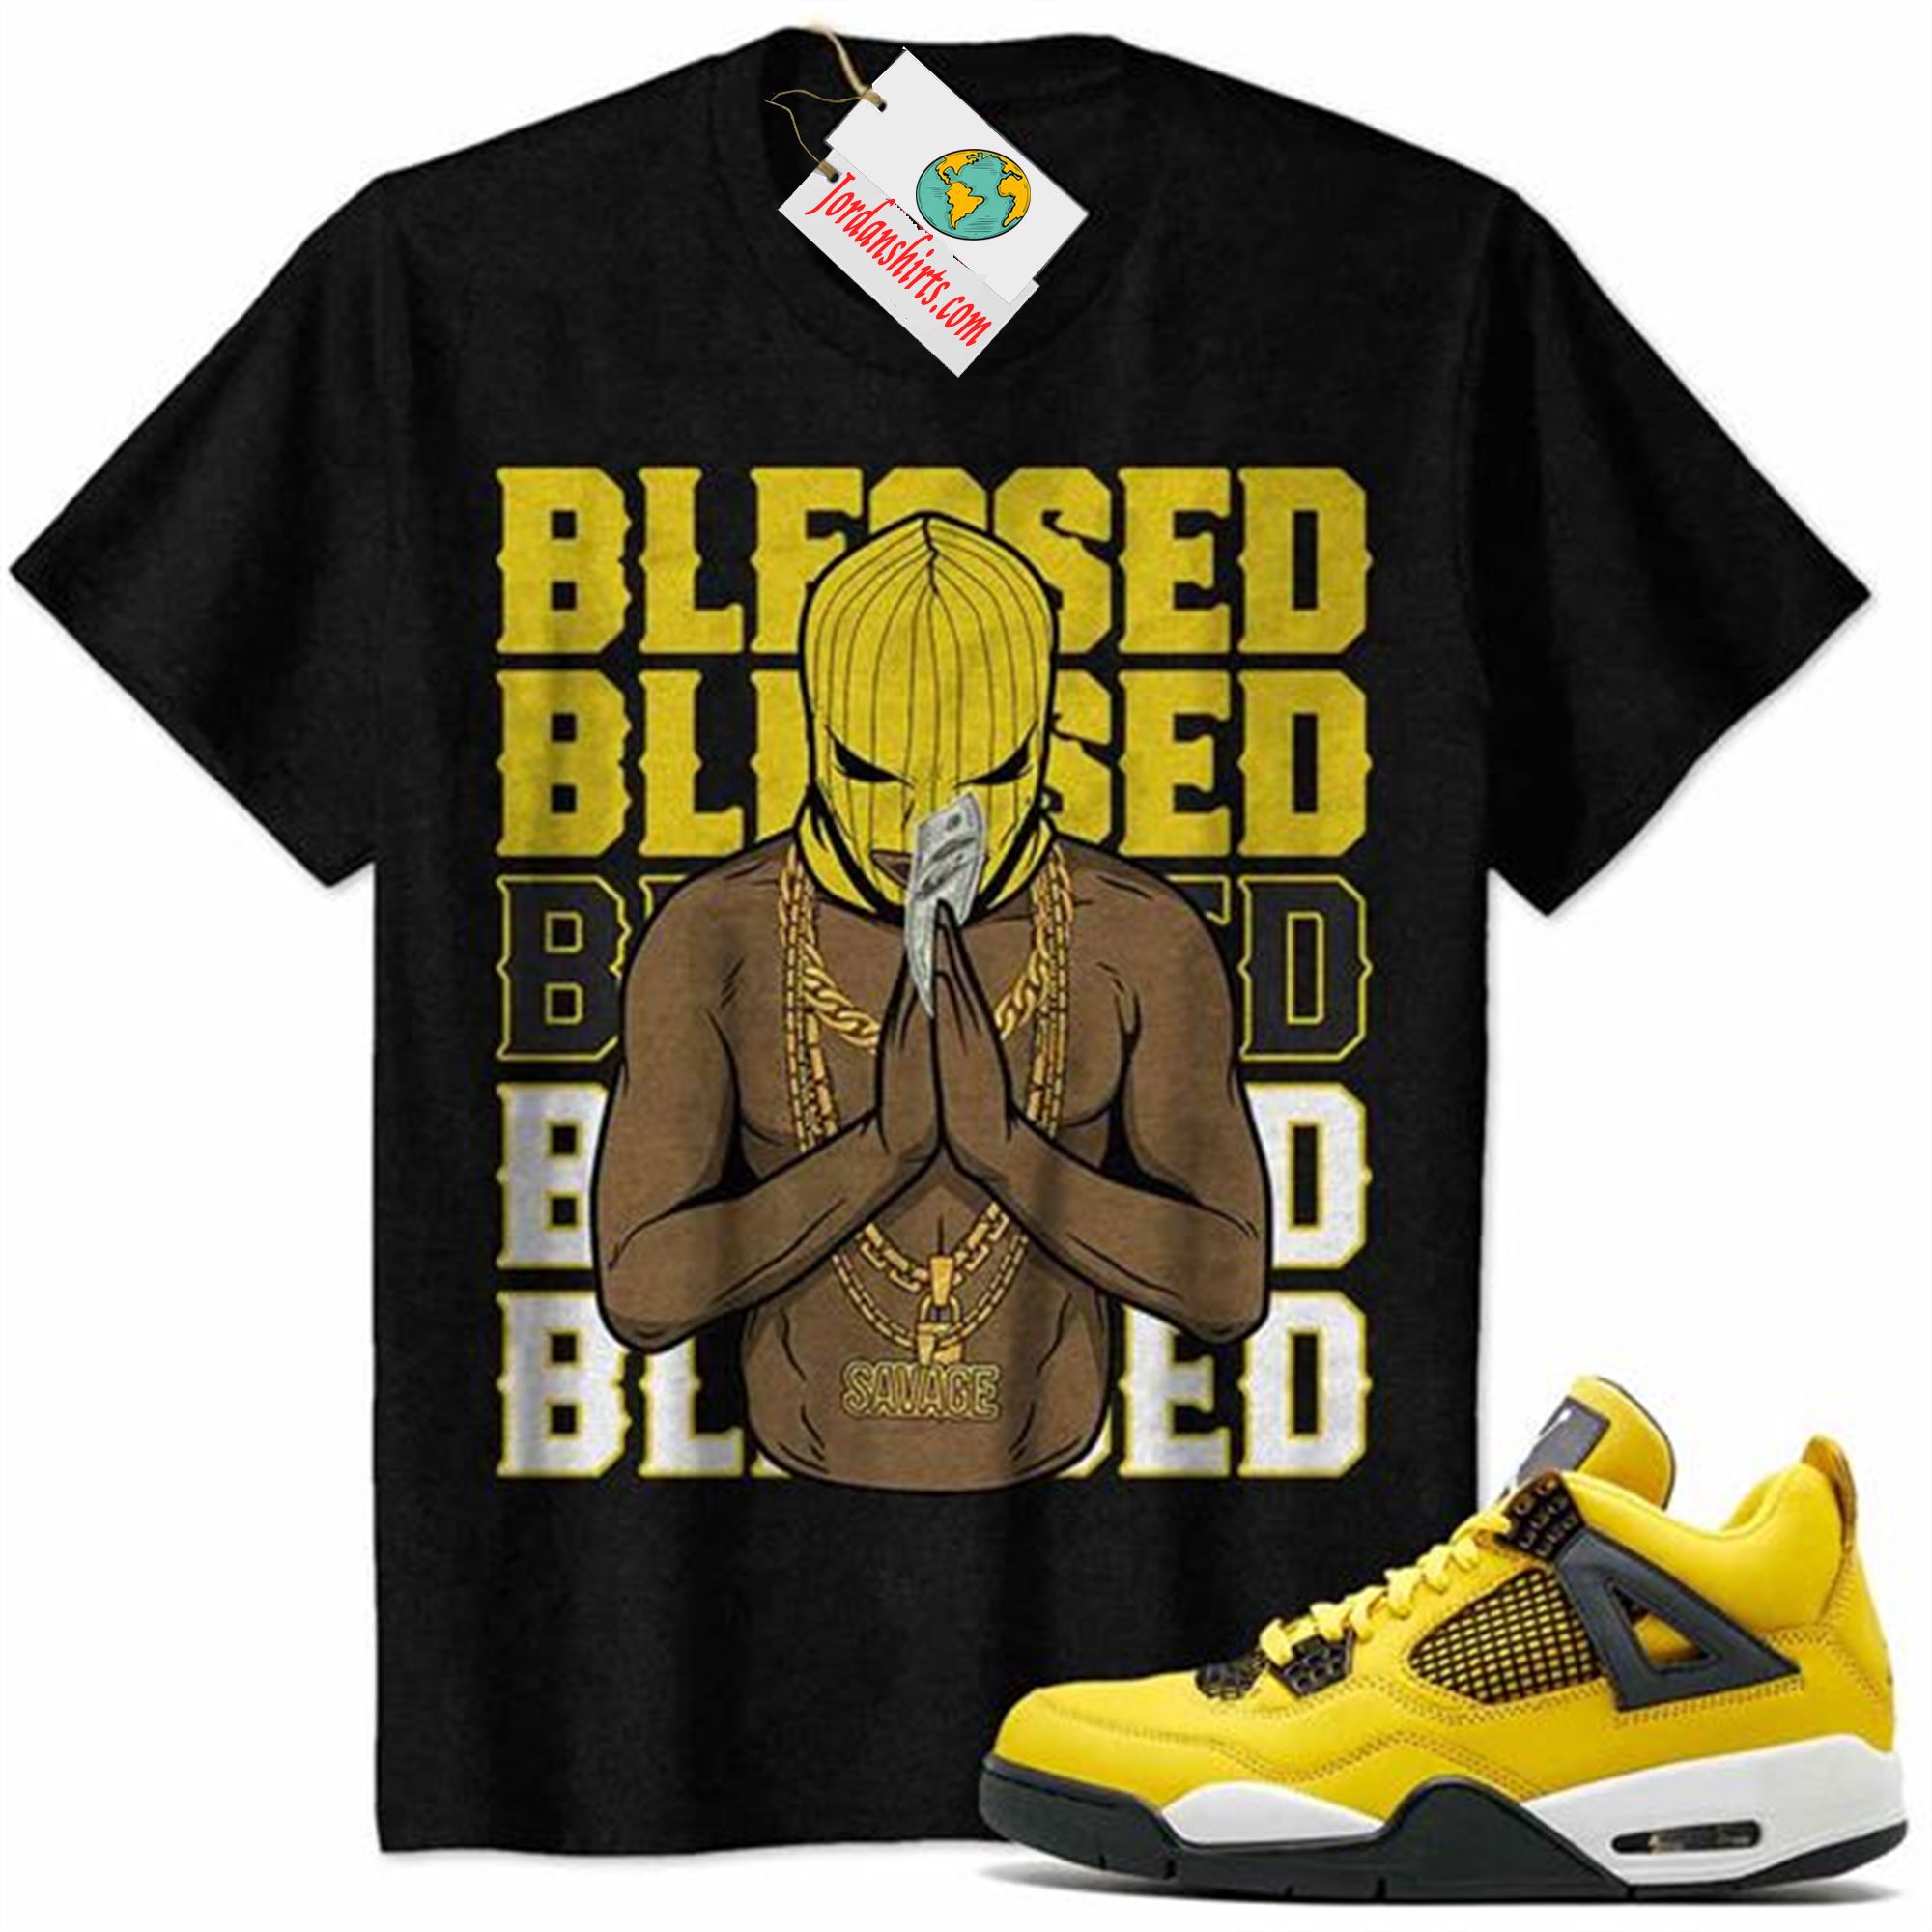 Jordan 4 Shirt, Gangster Ski Mask Man Savage Blessed Black Air Jordan 4 Tour Yellow Lightning 4s-trungten-stfbr Plus Size Up To 5xl